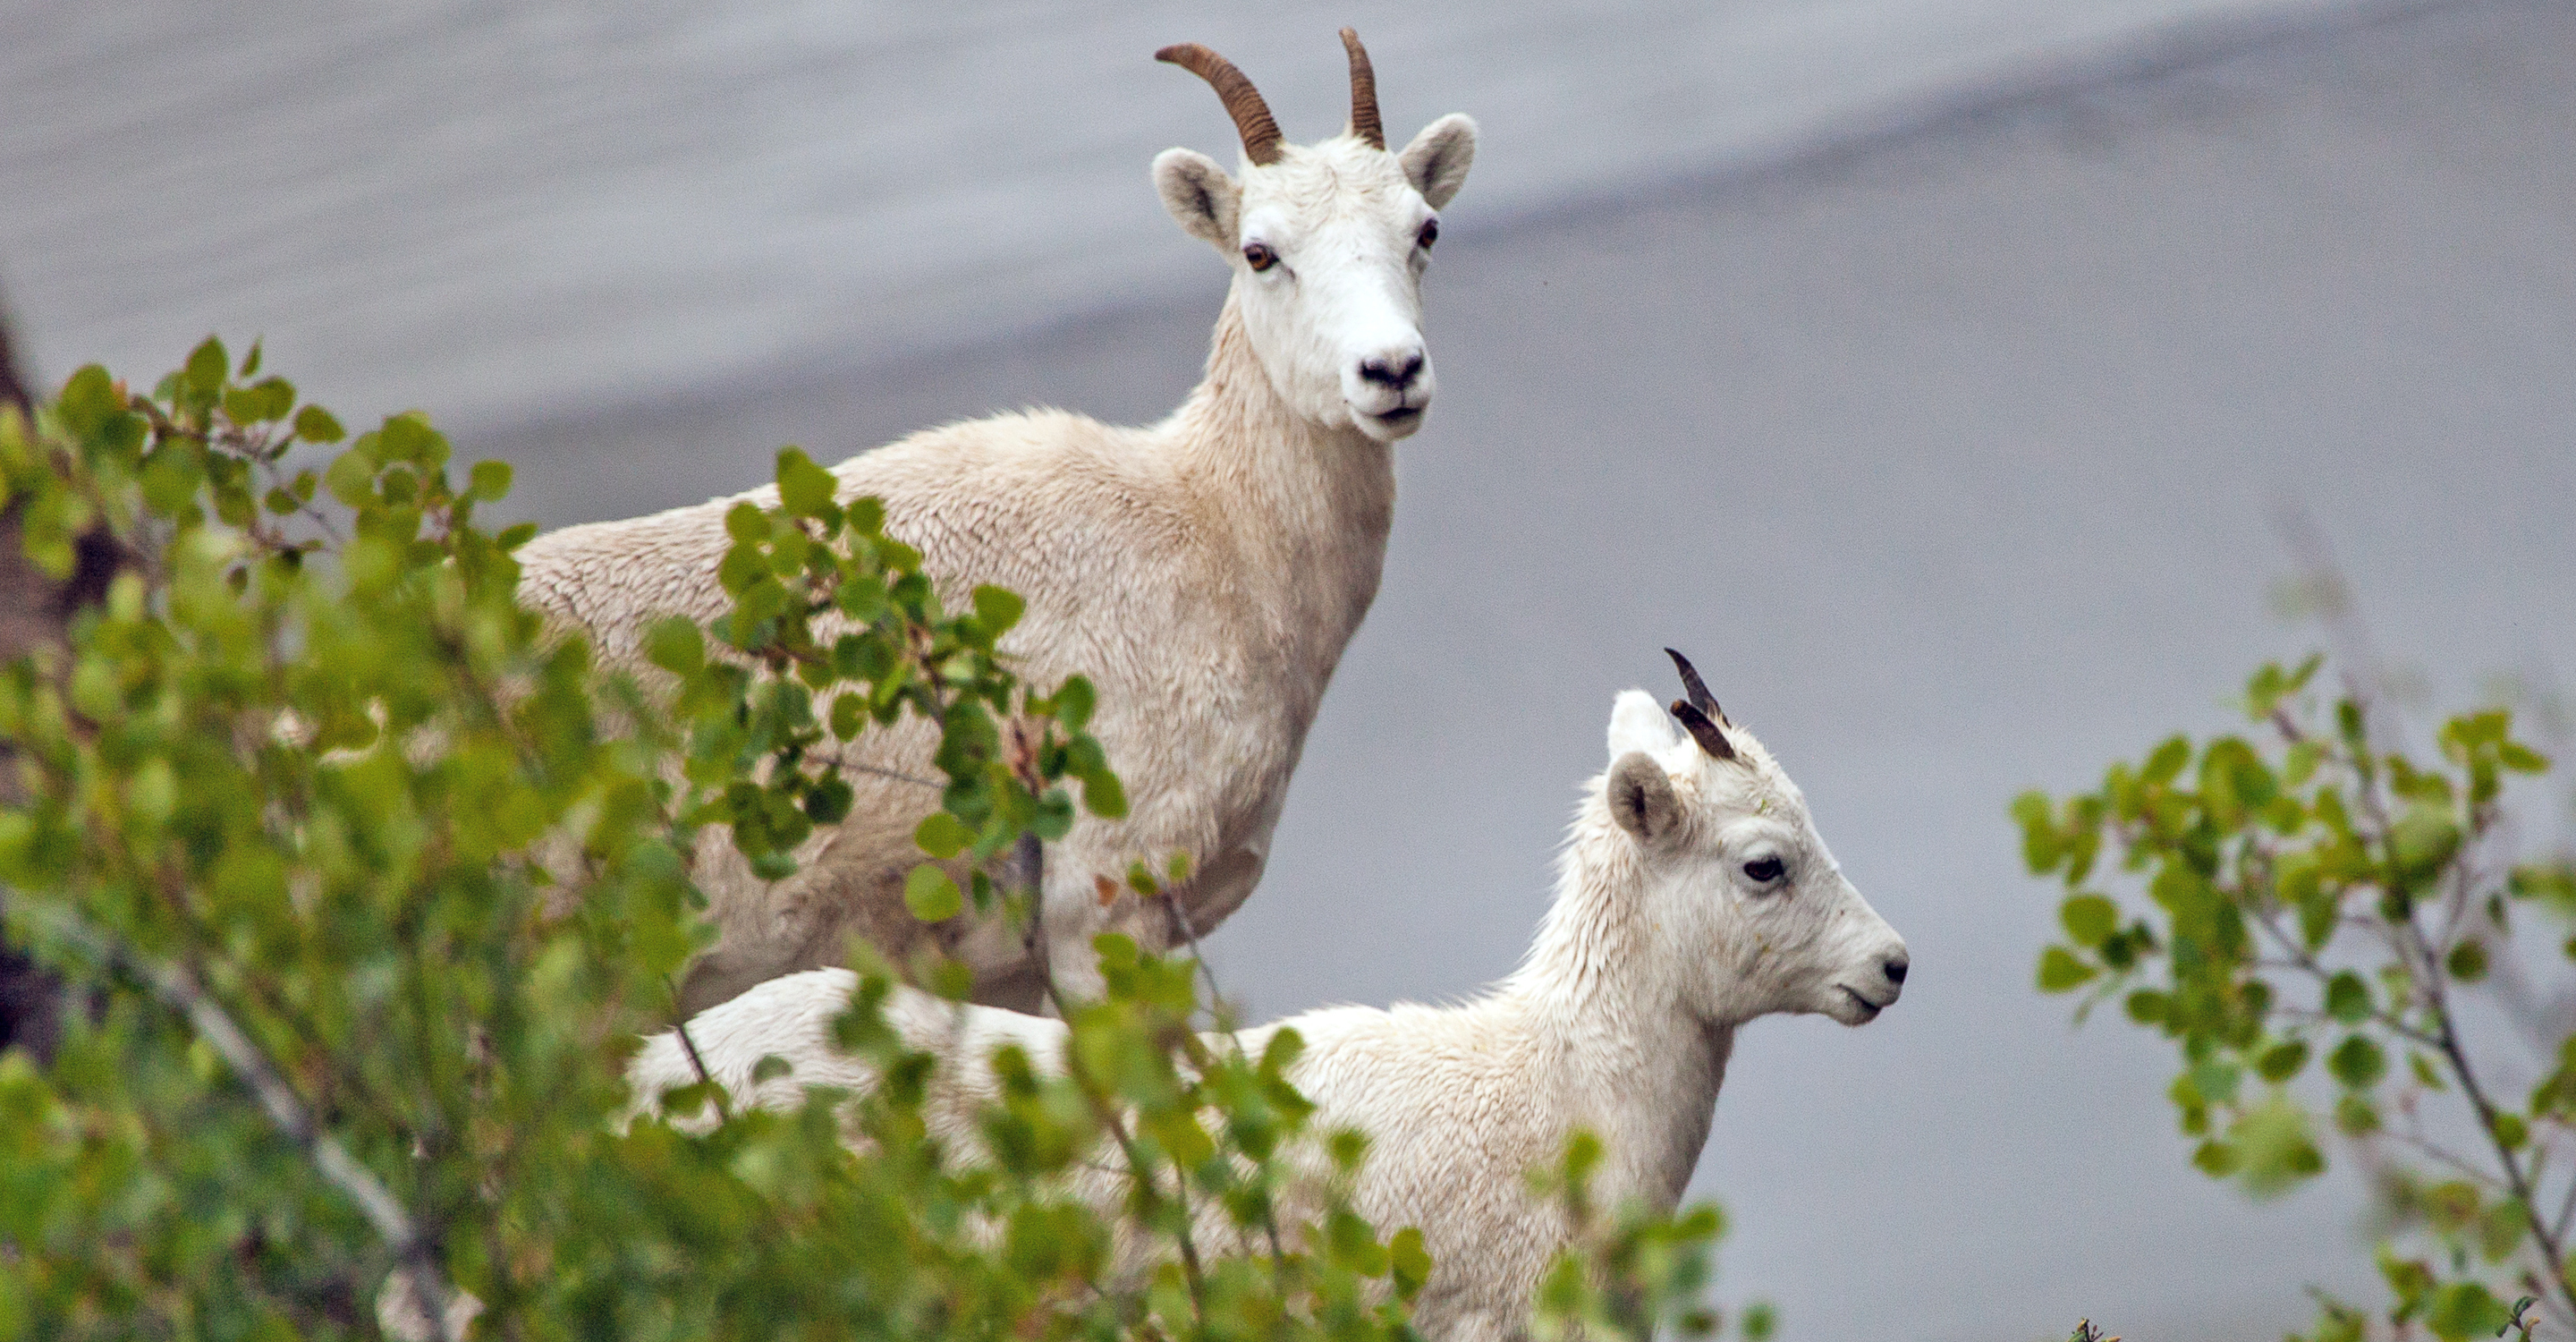 Two young mountain goats in the Kenai Peninsula, Alaska, USA